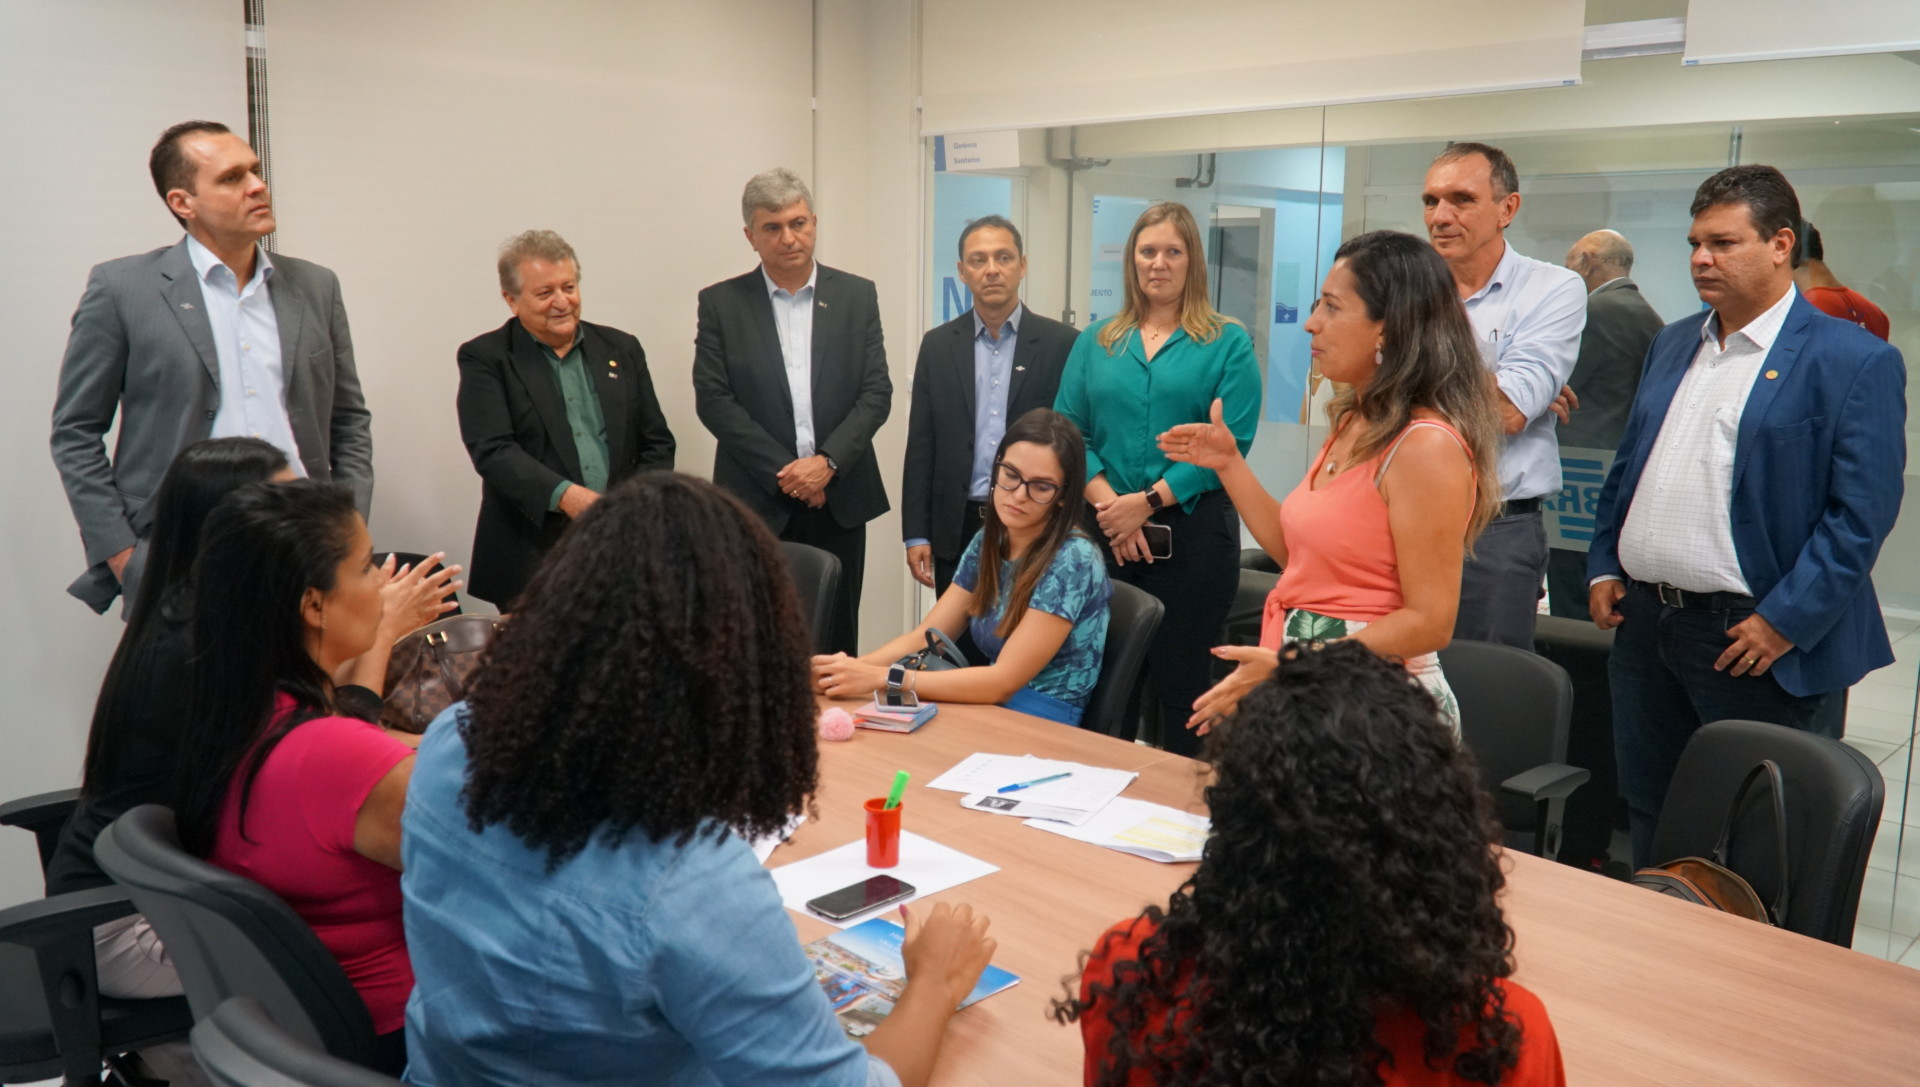 Interação com clientes do Sebrae em visita à Unidade Regional de São Luís